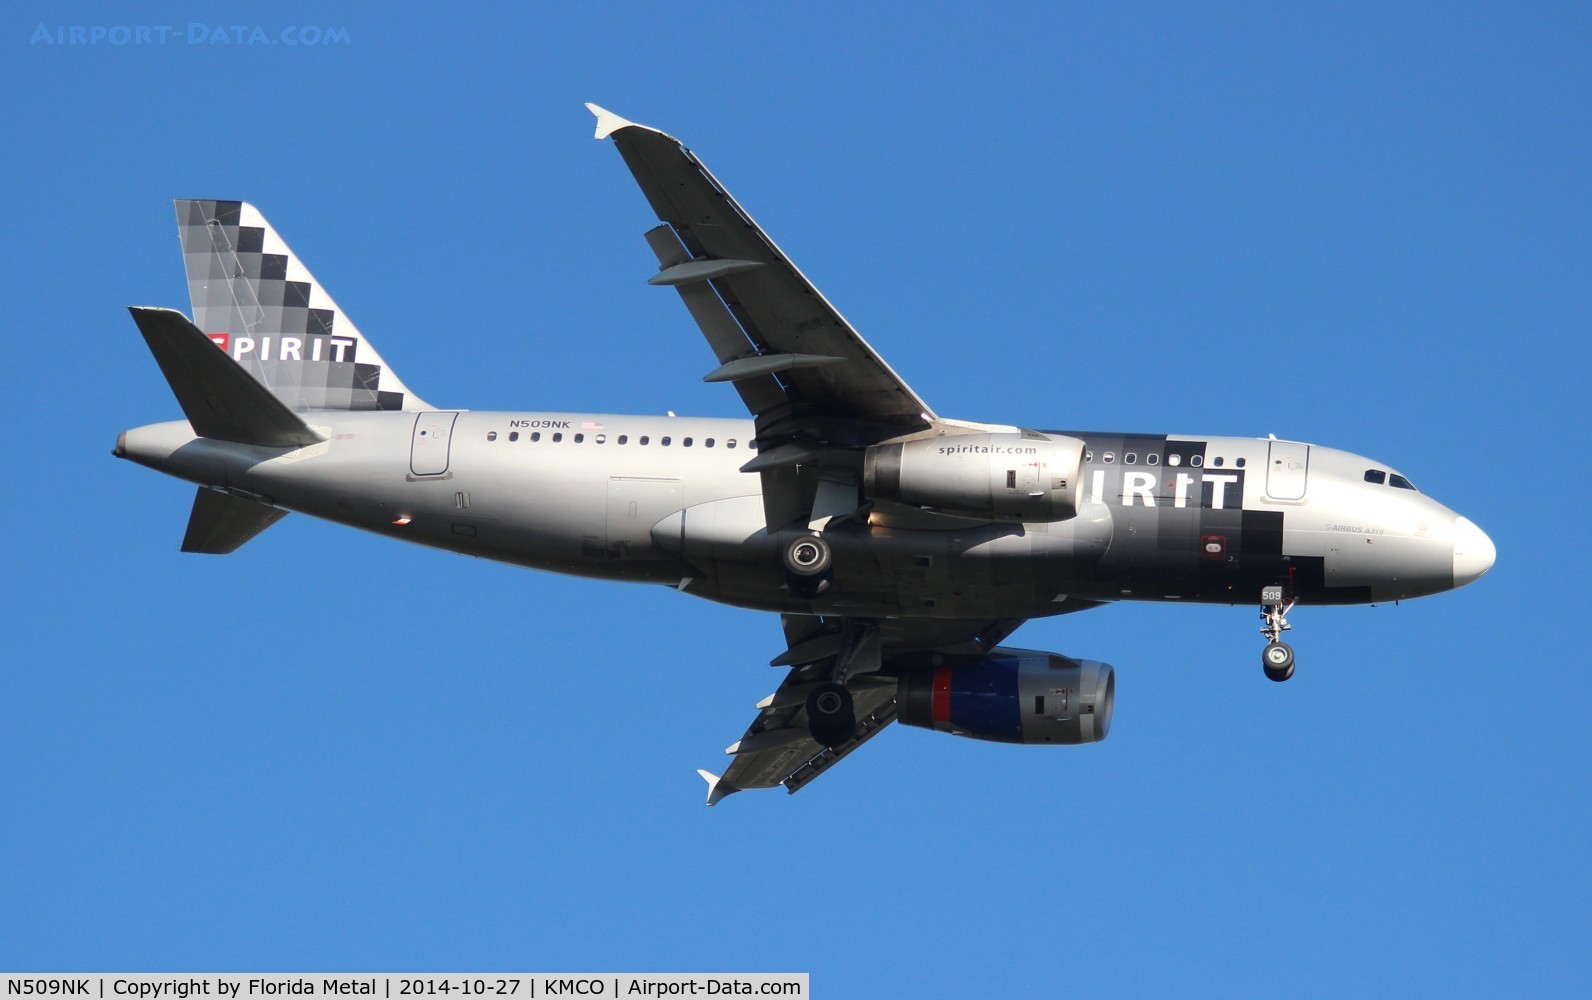 N509NK, 2005 Airbus A319-132 C/N 2603, NKS A319 silver zx